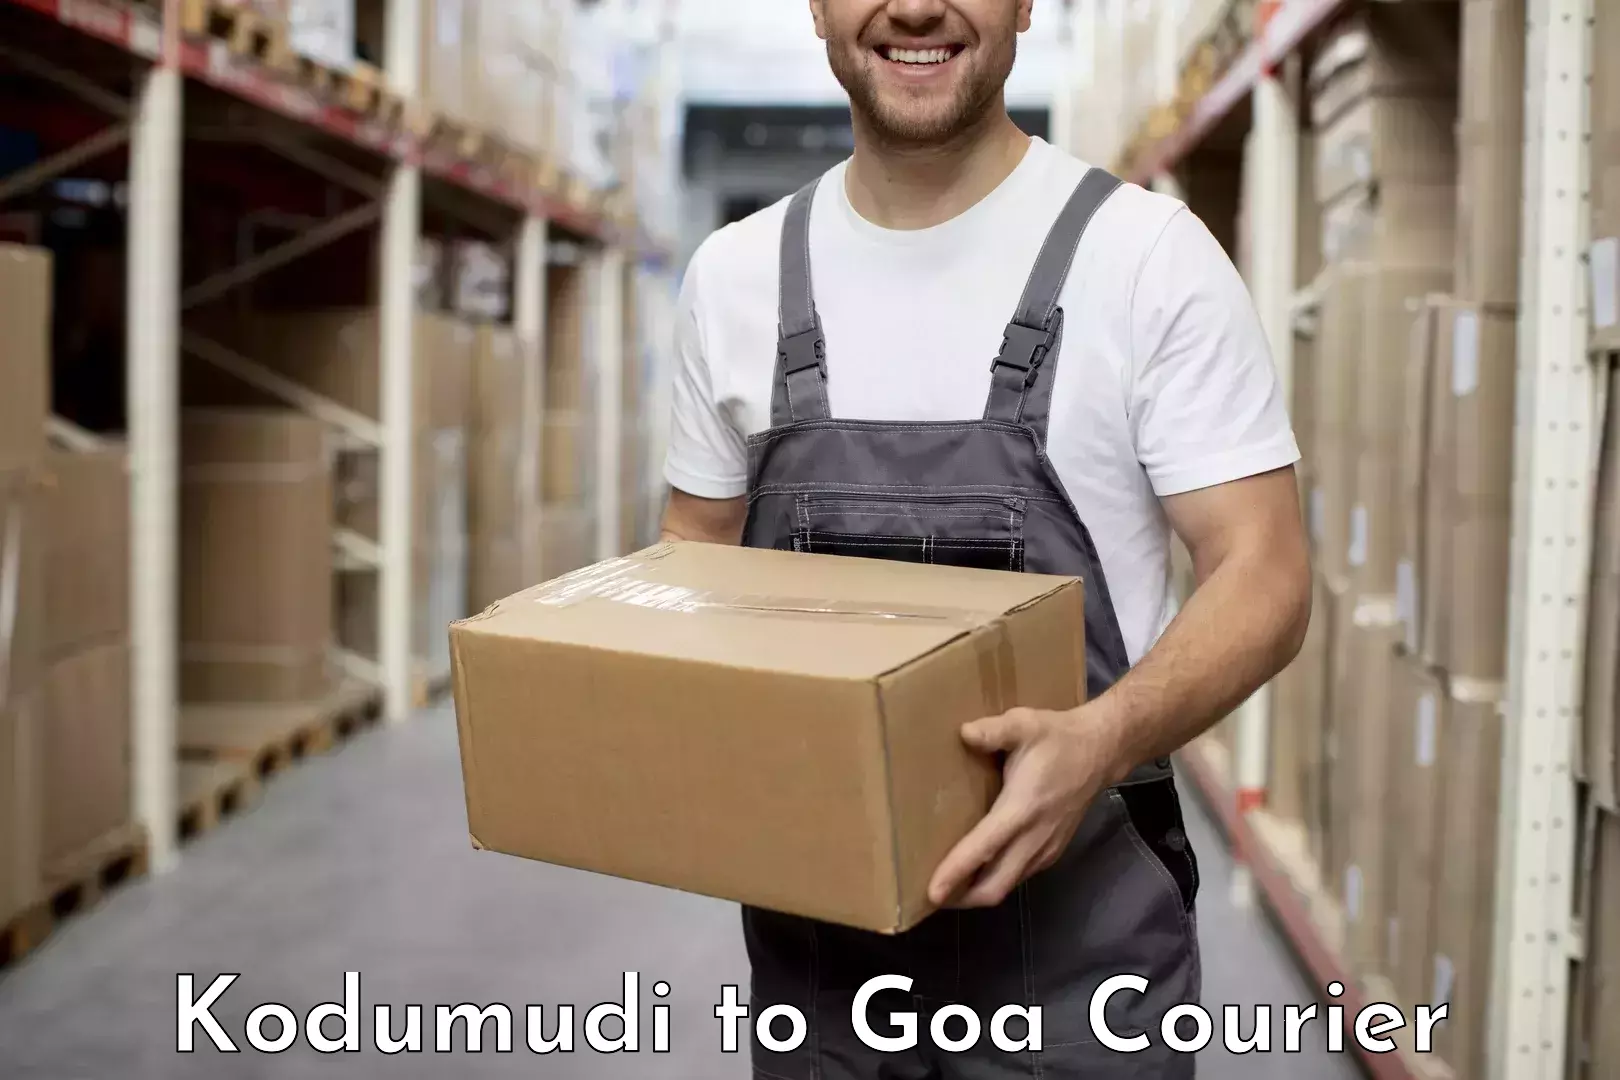 Courier service efficiency Kodumudi to Ponda